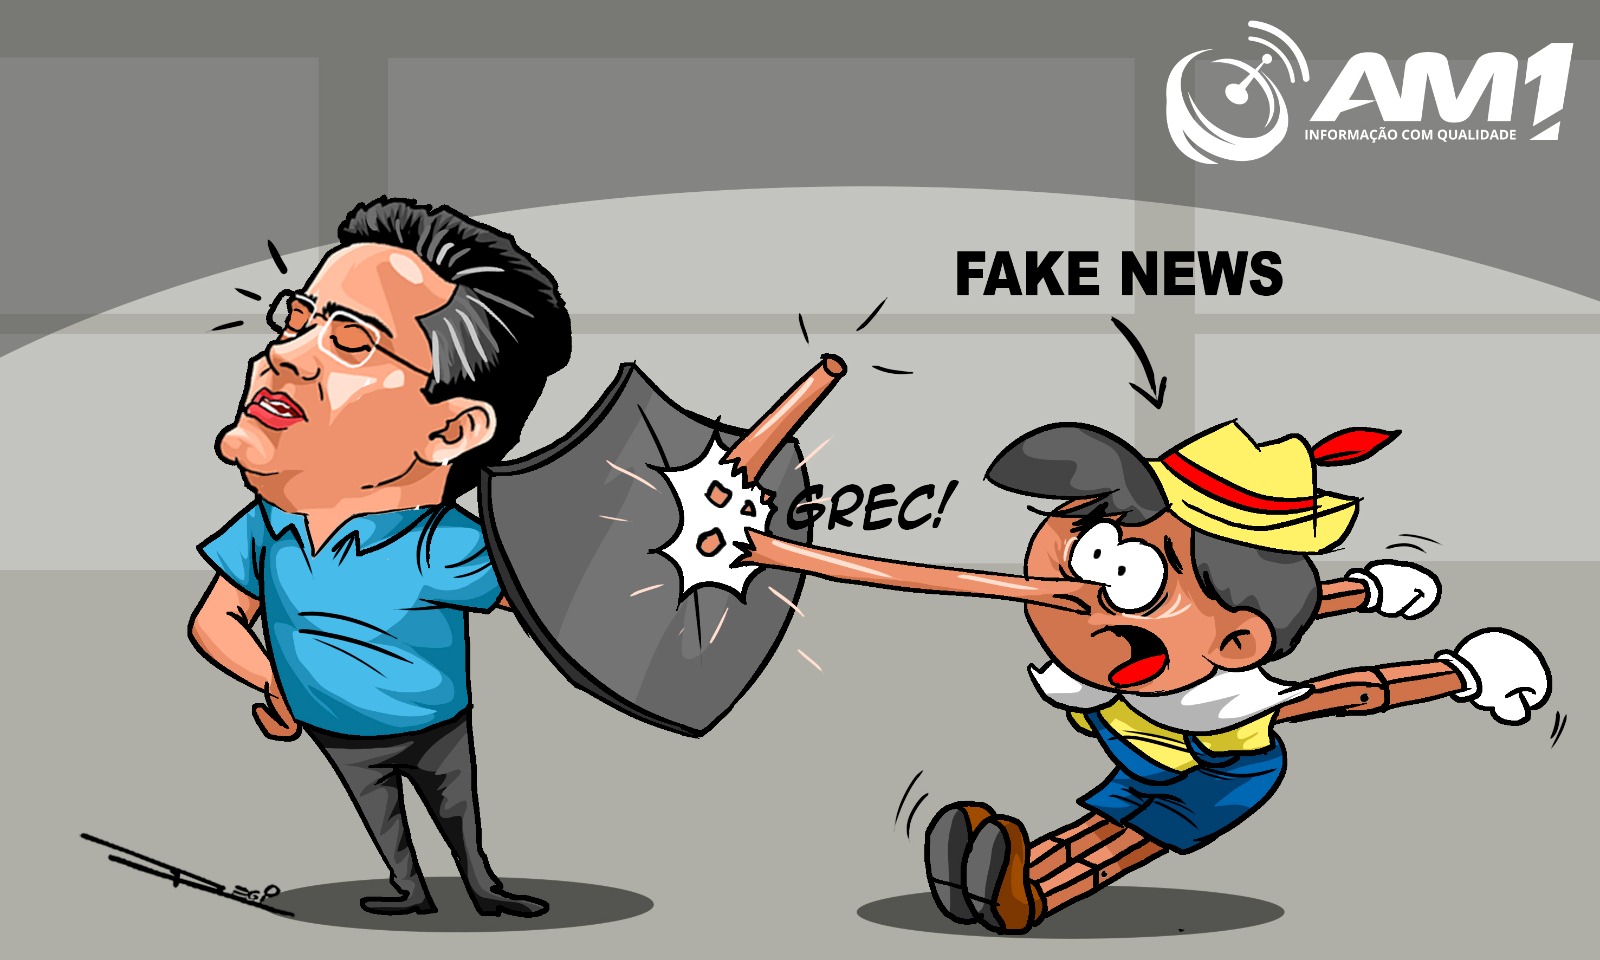 ‘Falácias não me atingem’, dispara prefeito de Manaus sobre fakes news a seu respeito